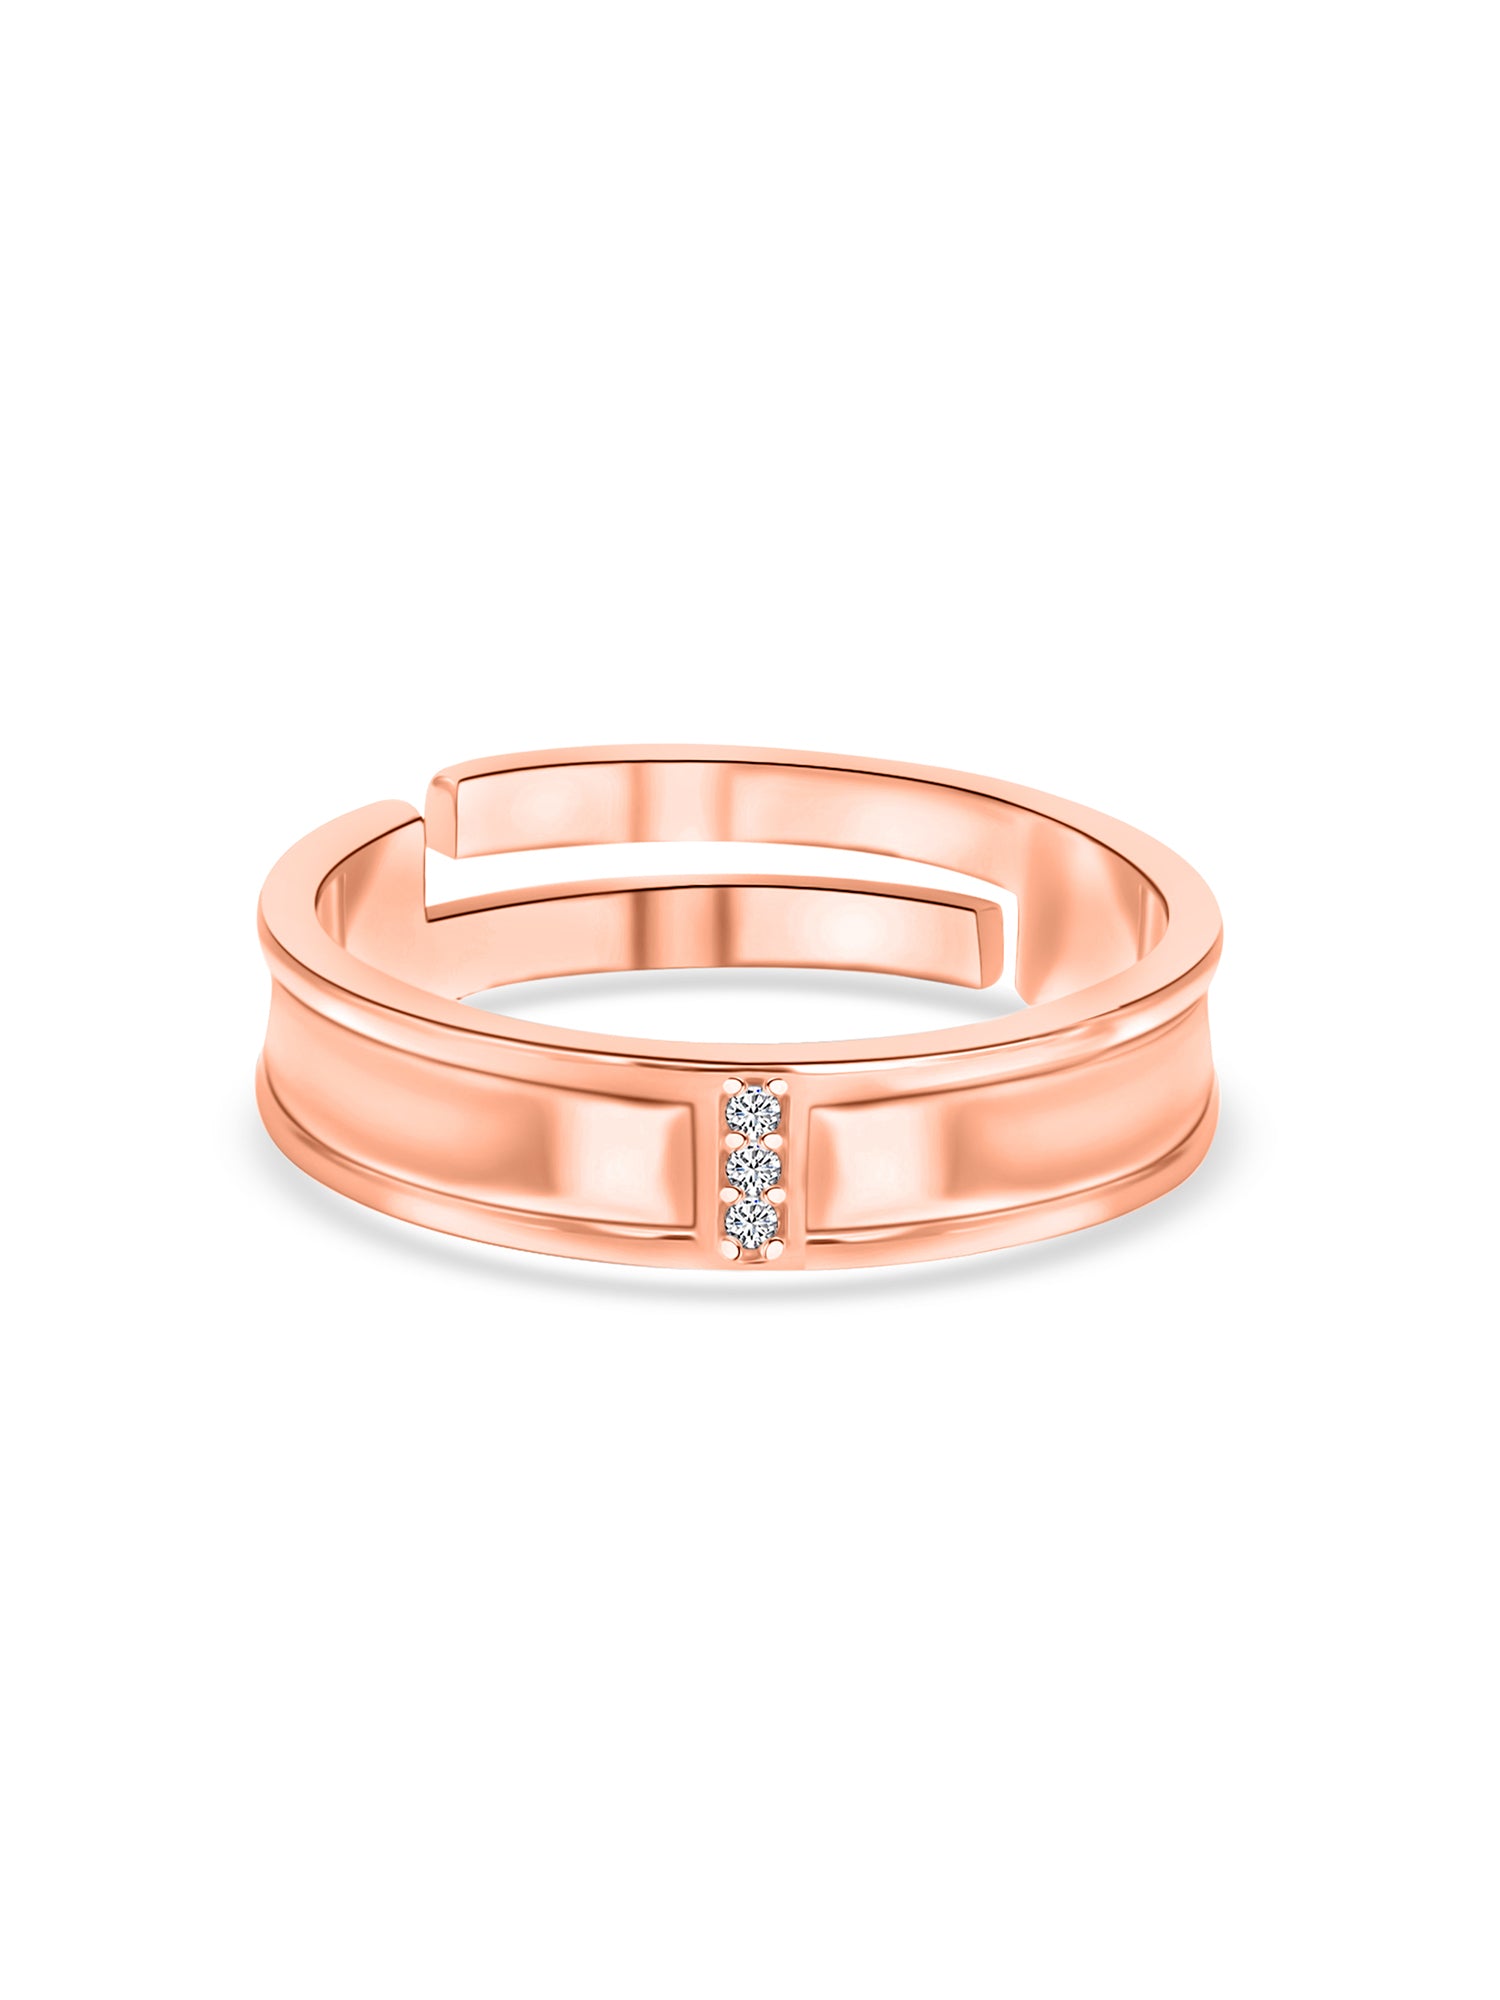 Rose Gold Adjustable Silver Band Ring For Men